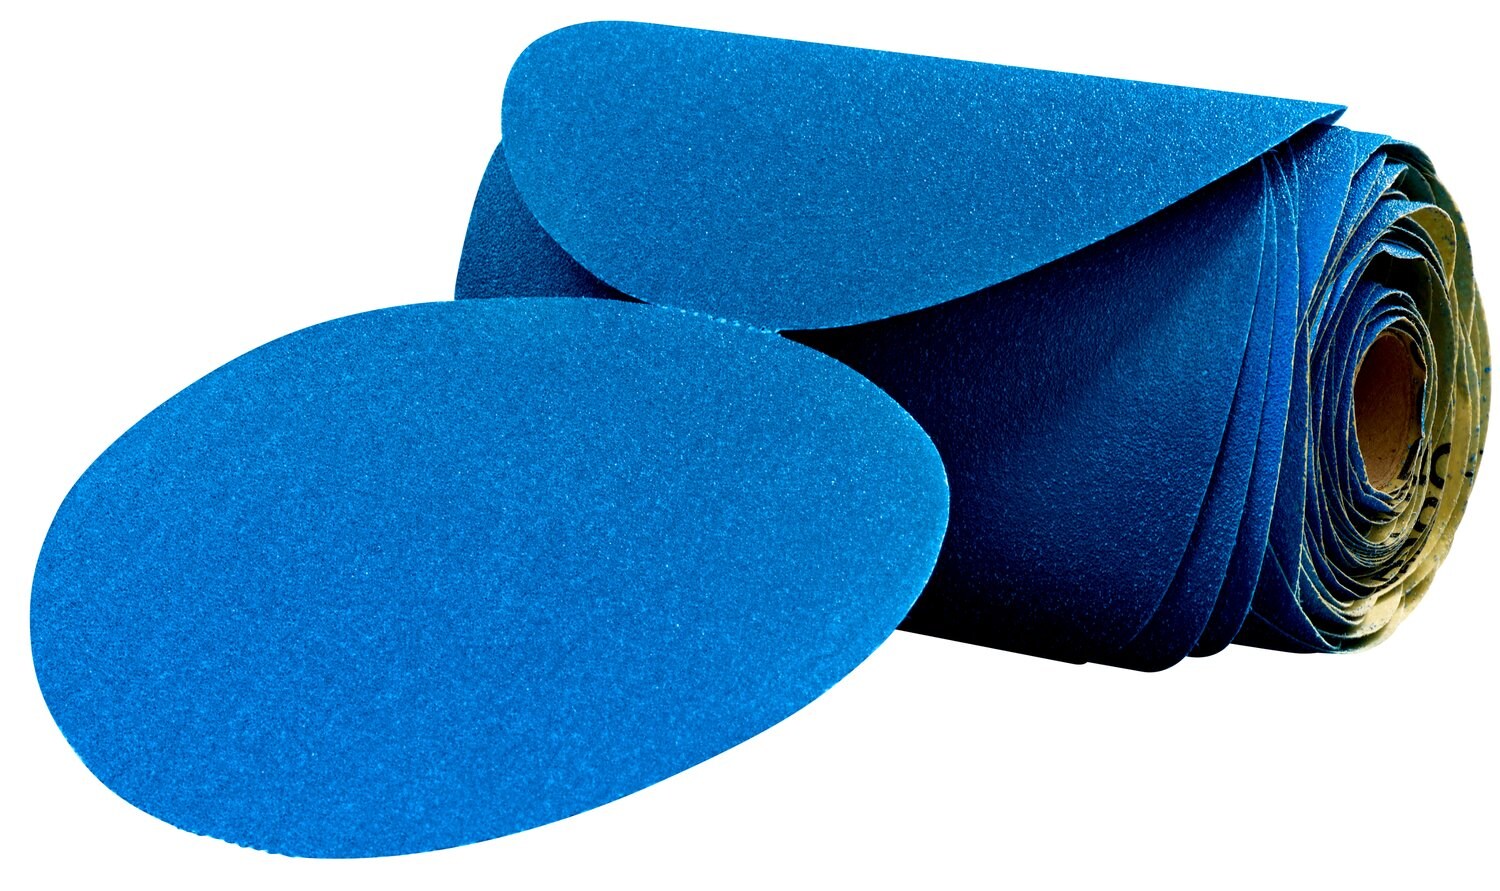 7100098229 - 3M Stikit Blue Abrasive Disc Roll, 36200, 6 in, 40 grade, 25 discs per
roll, 5 rolls per case